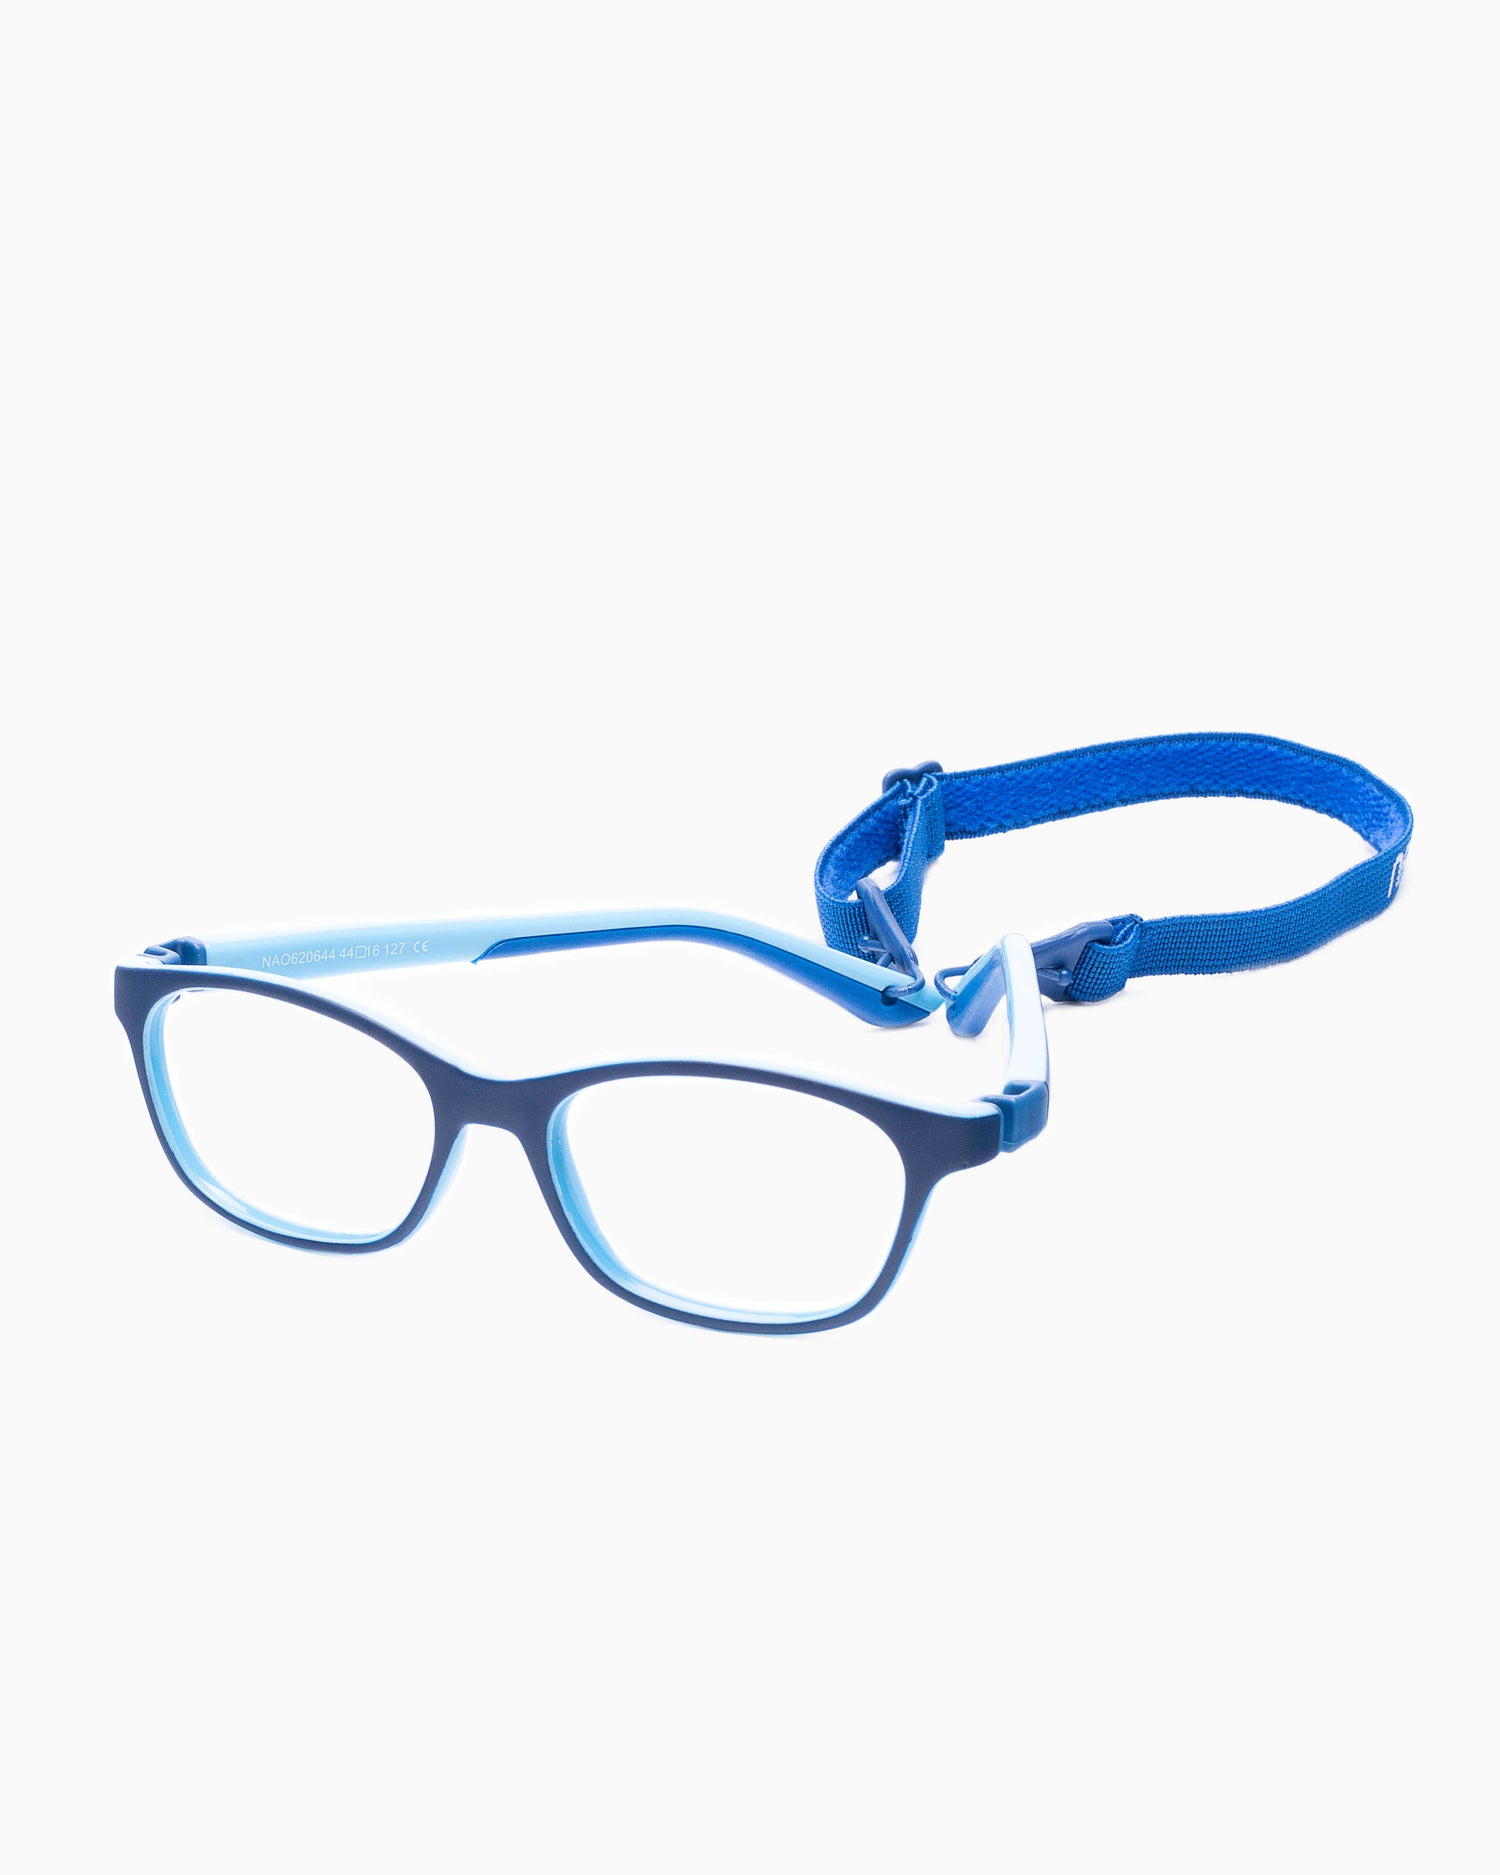 Nanovista Kids - CAMPER - BLUEBLUE | glasses bar:  Marie-Sophie Dion